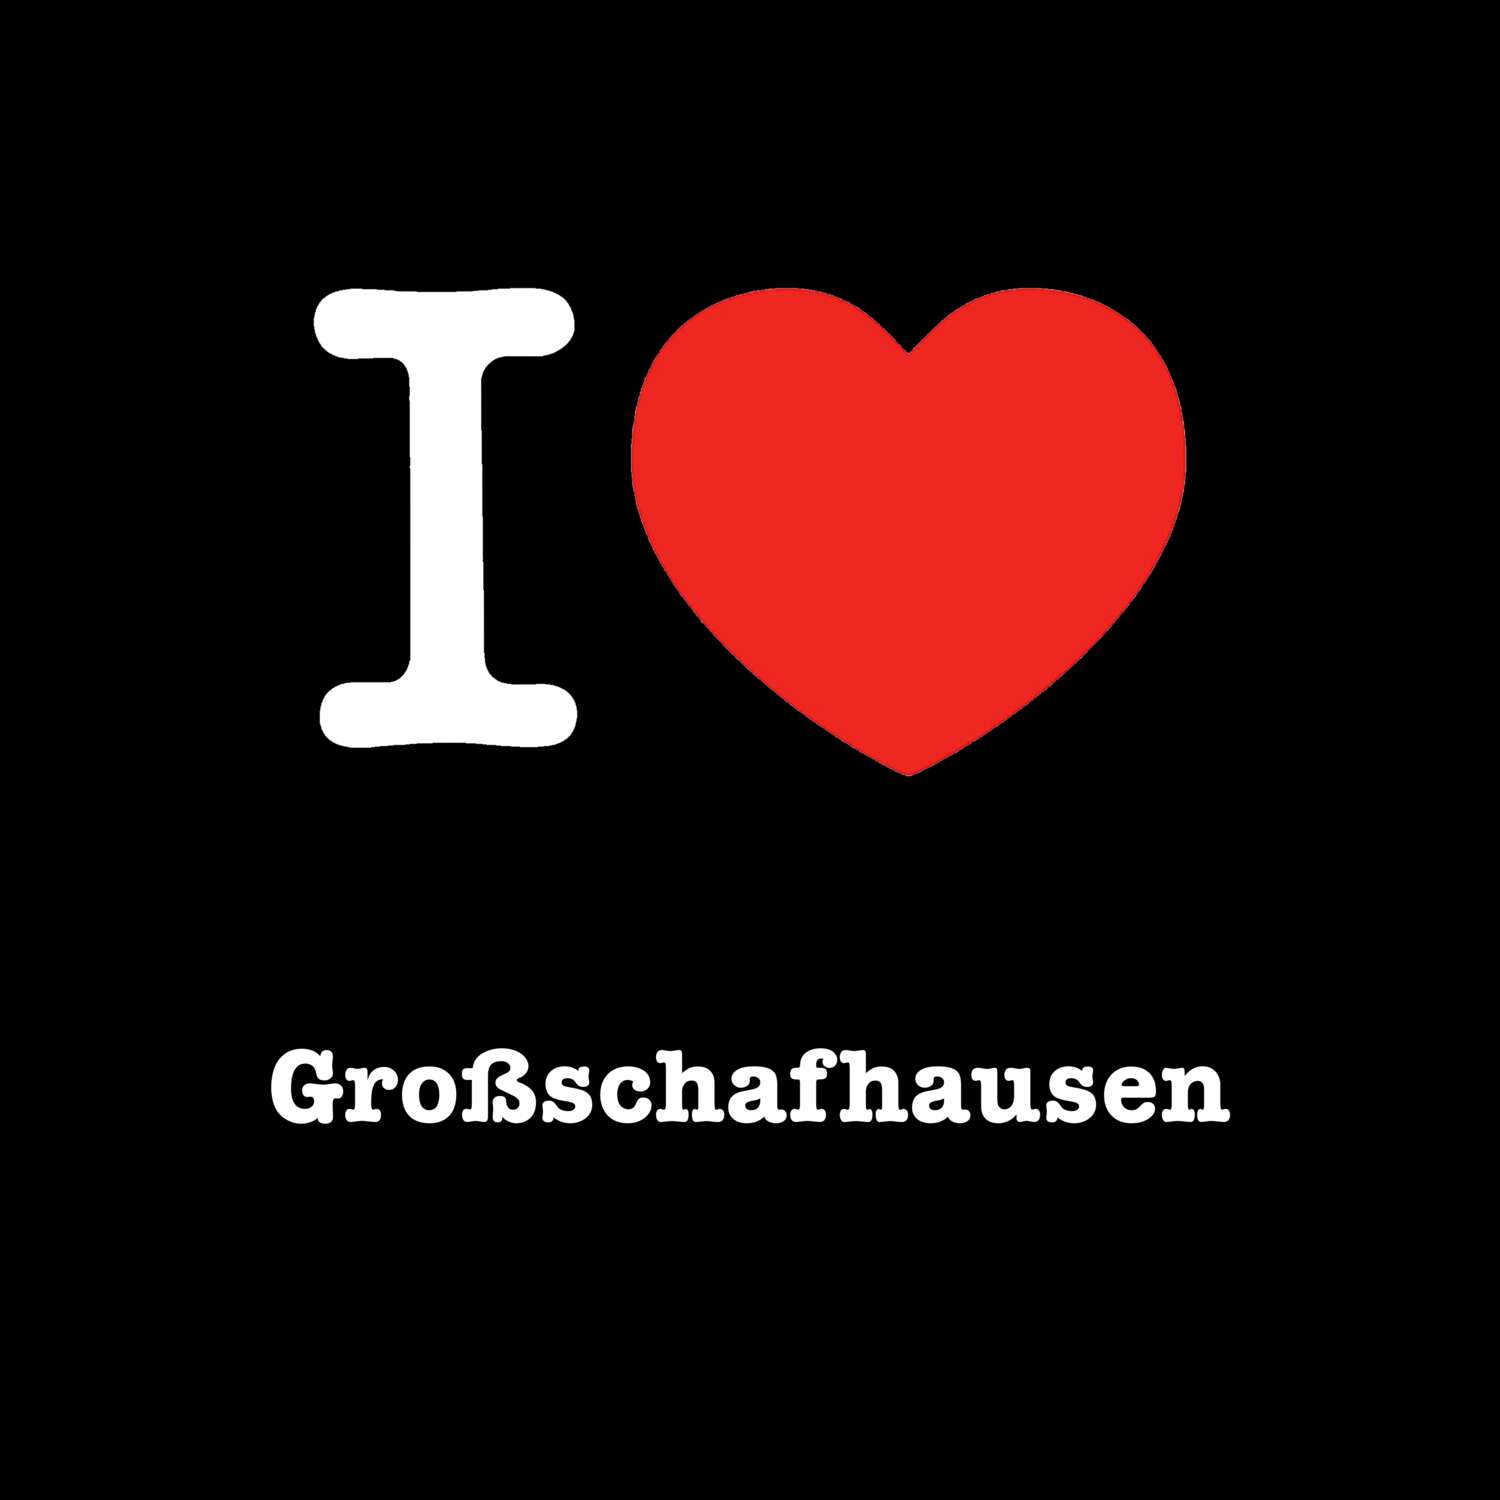 Großschafhausen T-Shirt »I love«